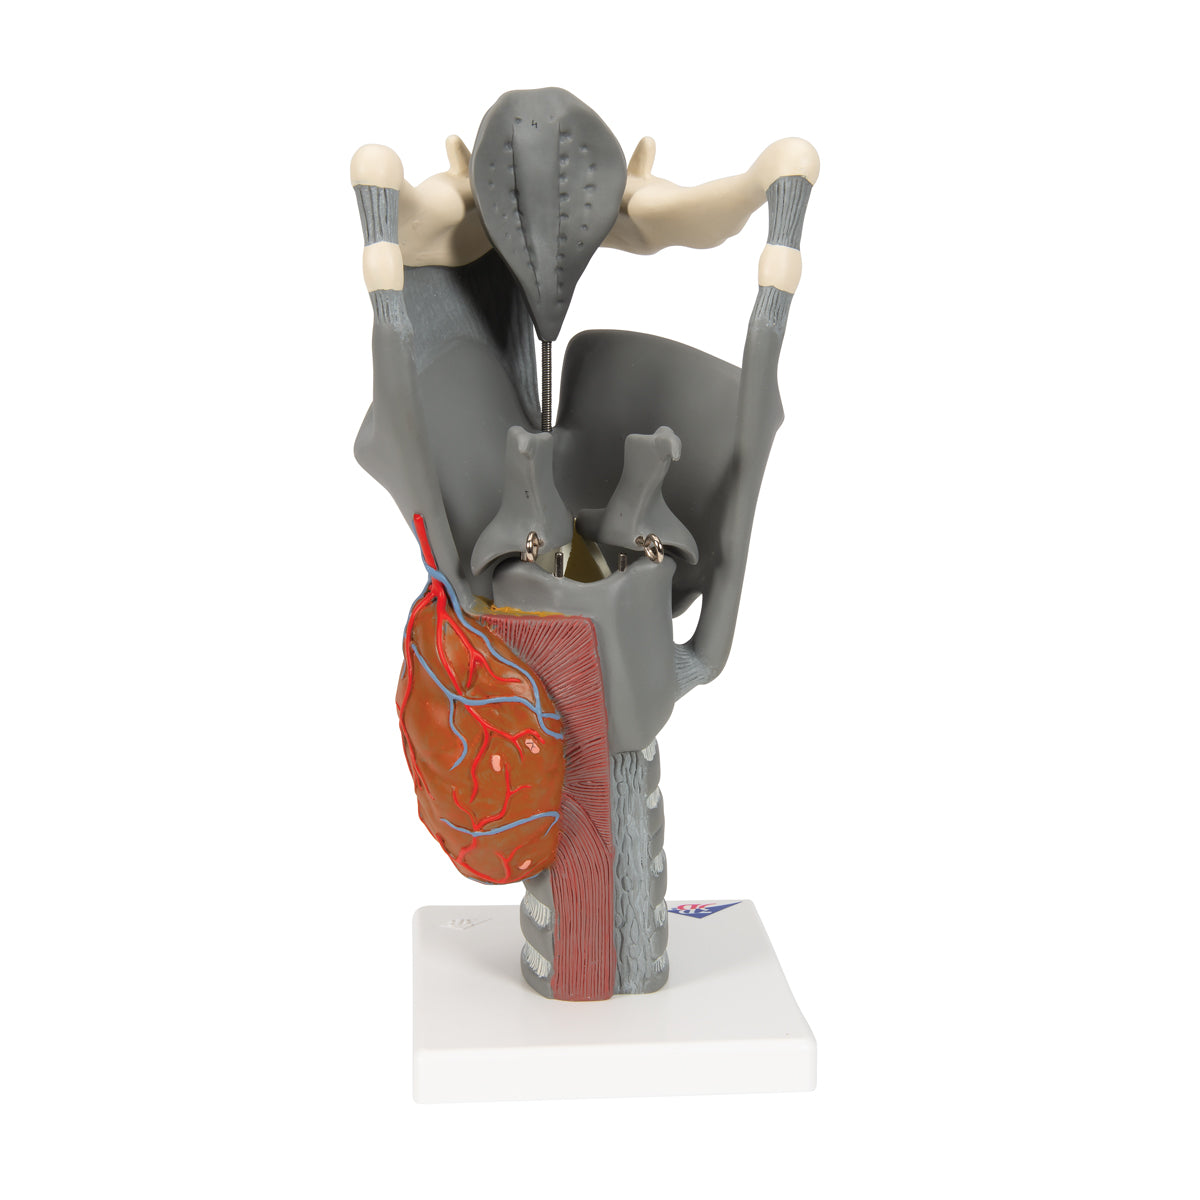 Modell av struphuvudet med rörliga näsbrosk och epiglottis